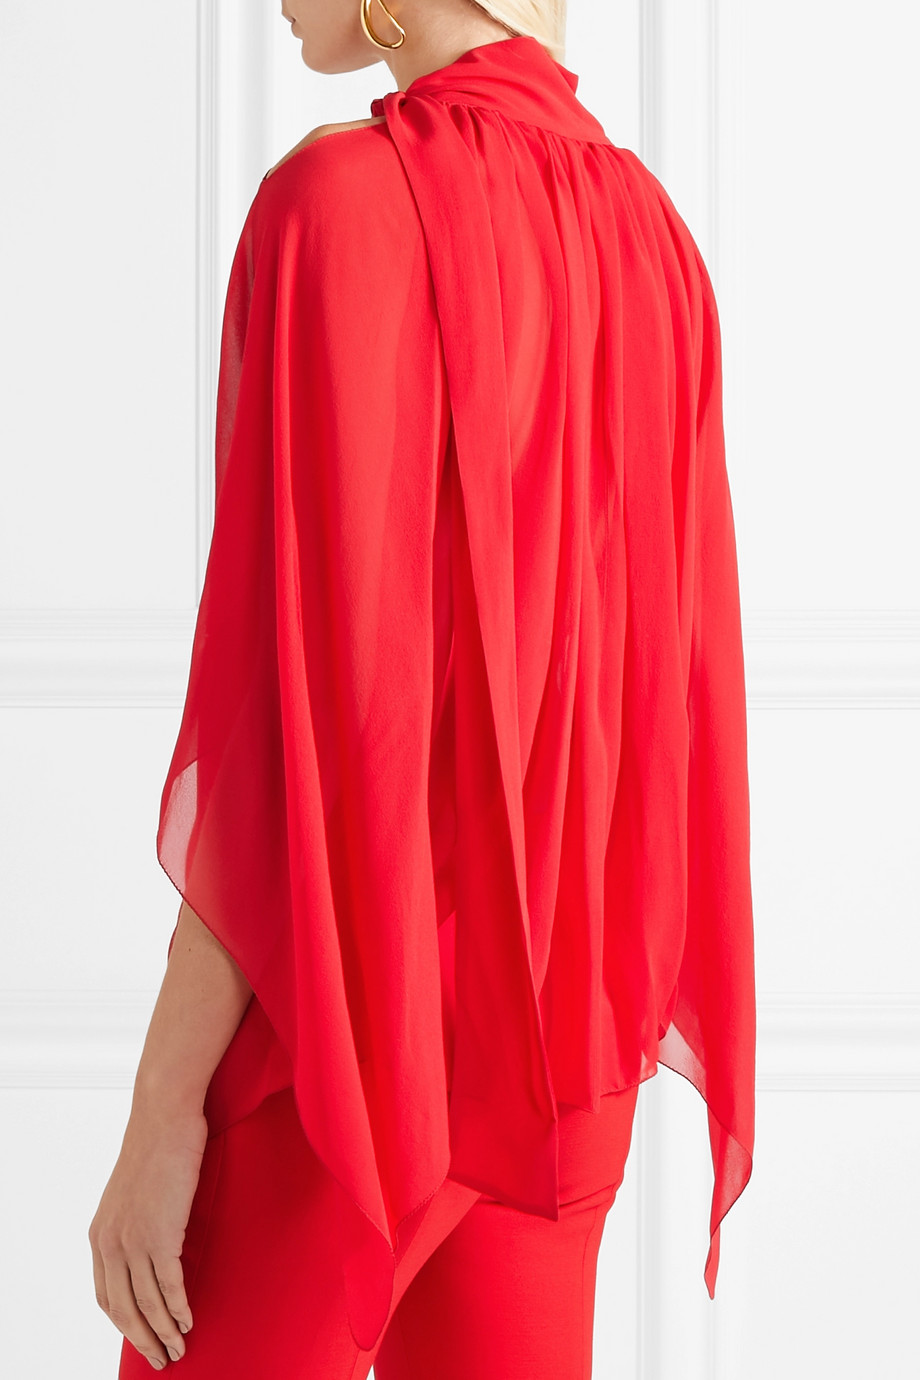 Блузка шелковая Antonio Berardi для женщин